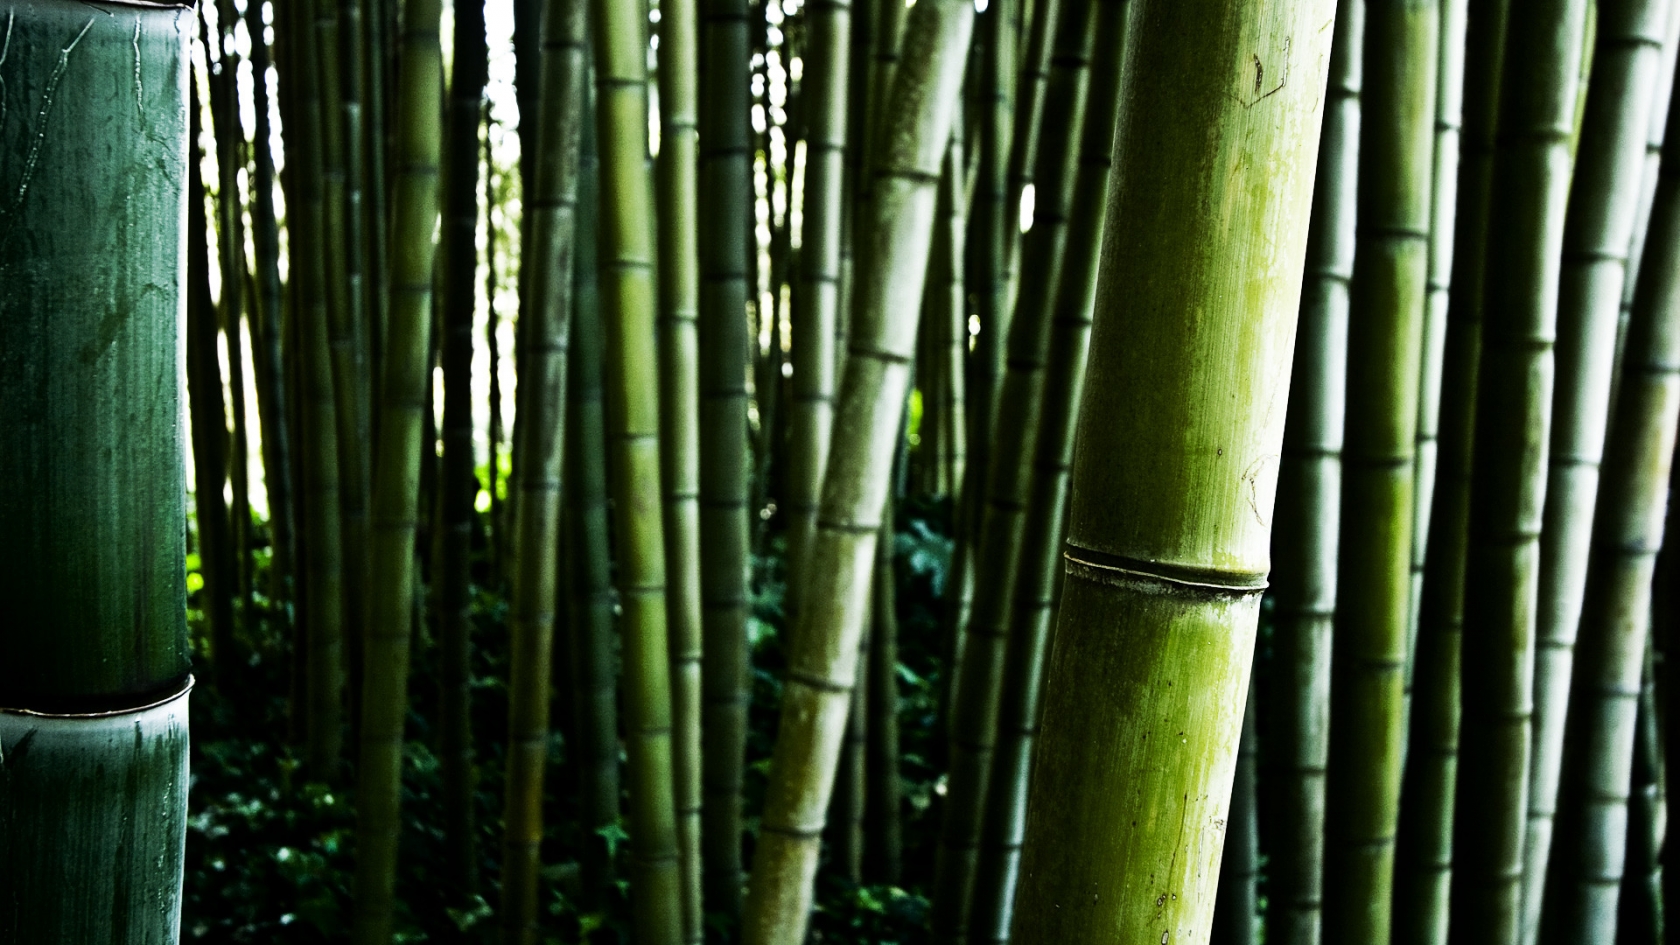 Bamboo stalks for 1680 x 945 HDTV resolution